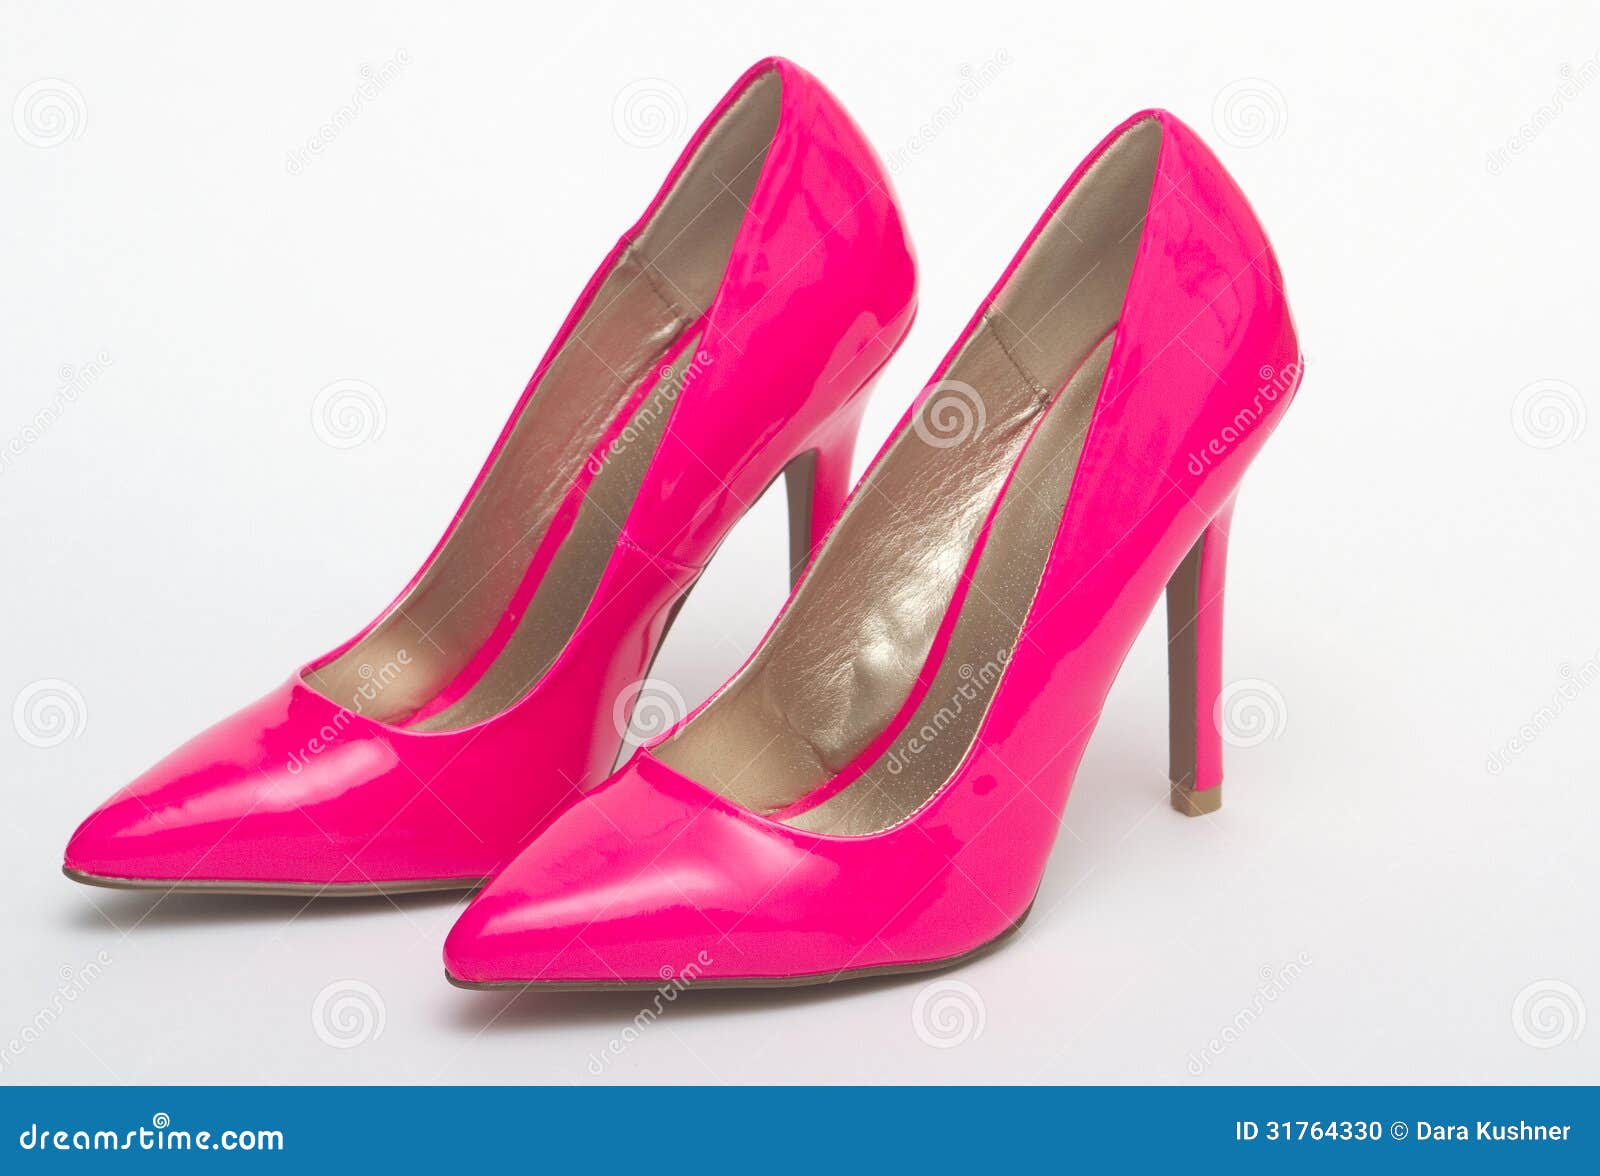 Sleek Court Heels in Neon Pink | Public Desire